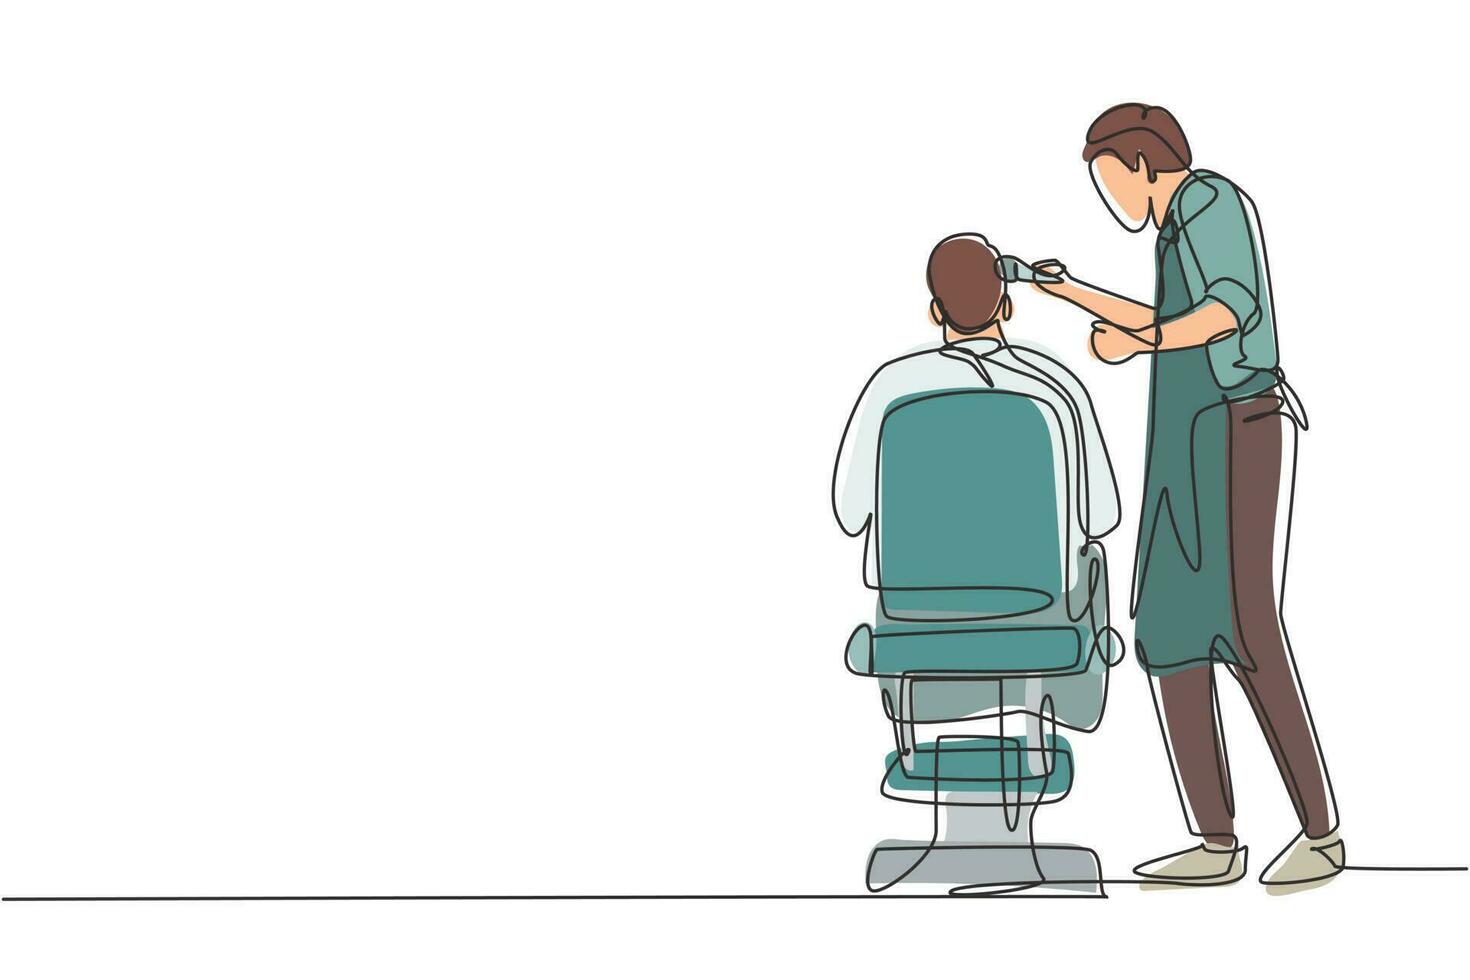 kontinuerlig en rad ritning bakifrån skott av stilig frisör klippa hår av ung manlig klient. frisör som betjänar klient på frisörsalong. enda rad rita design vektorgrafisk illustration vektor